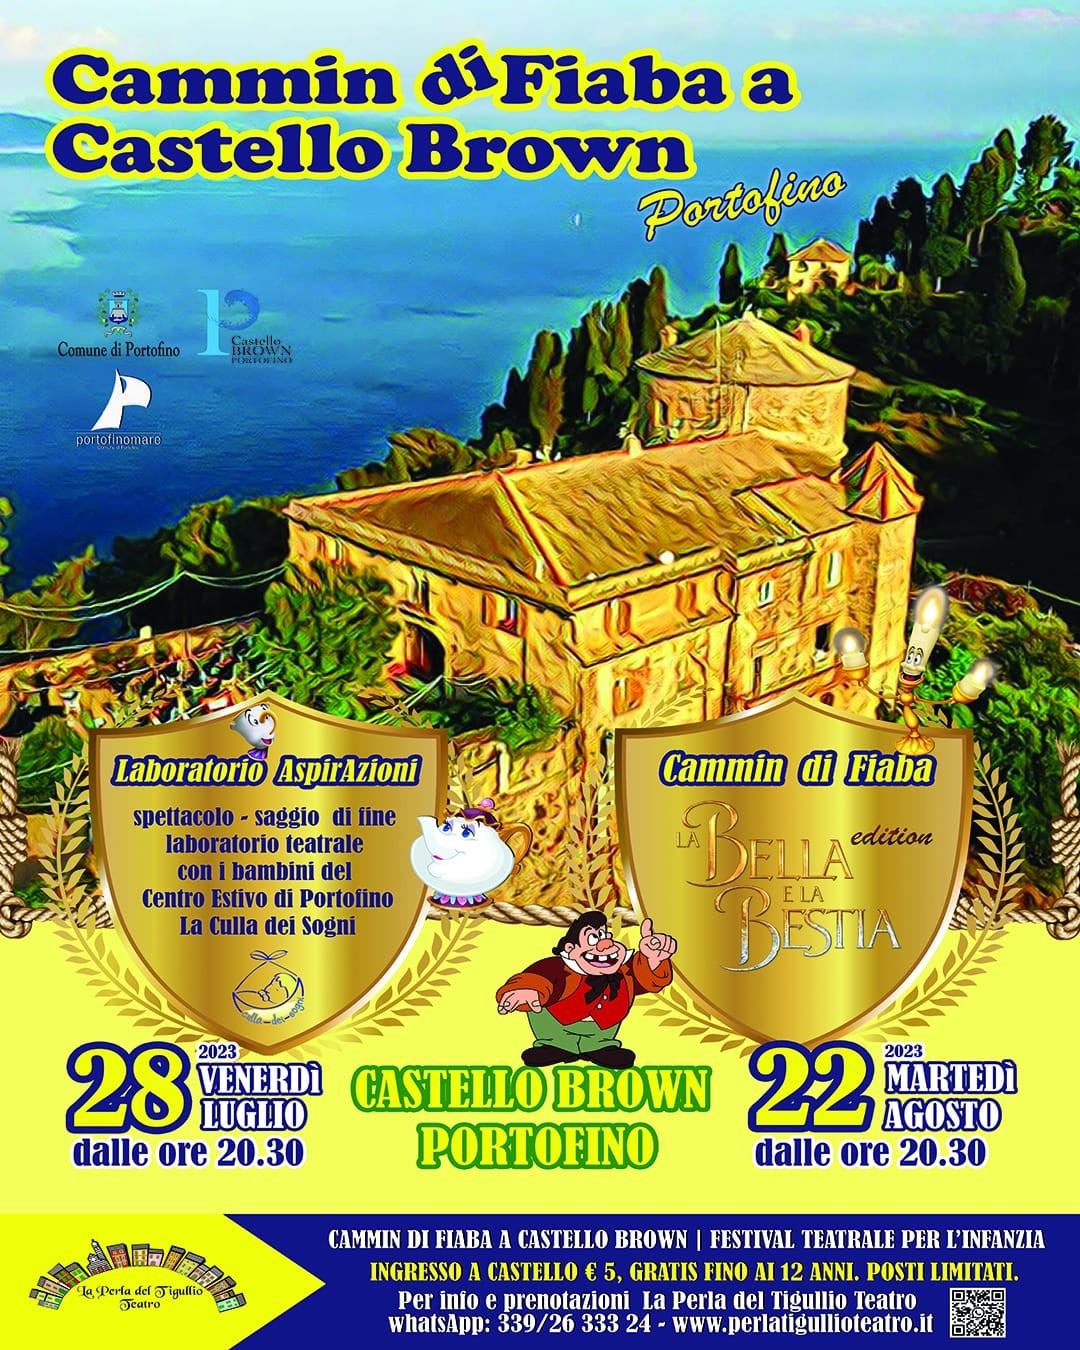 Comune di Portofino - Cammin di Fiaba - Castello Brown